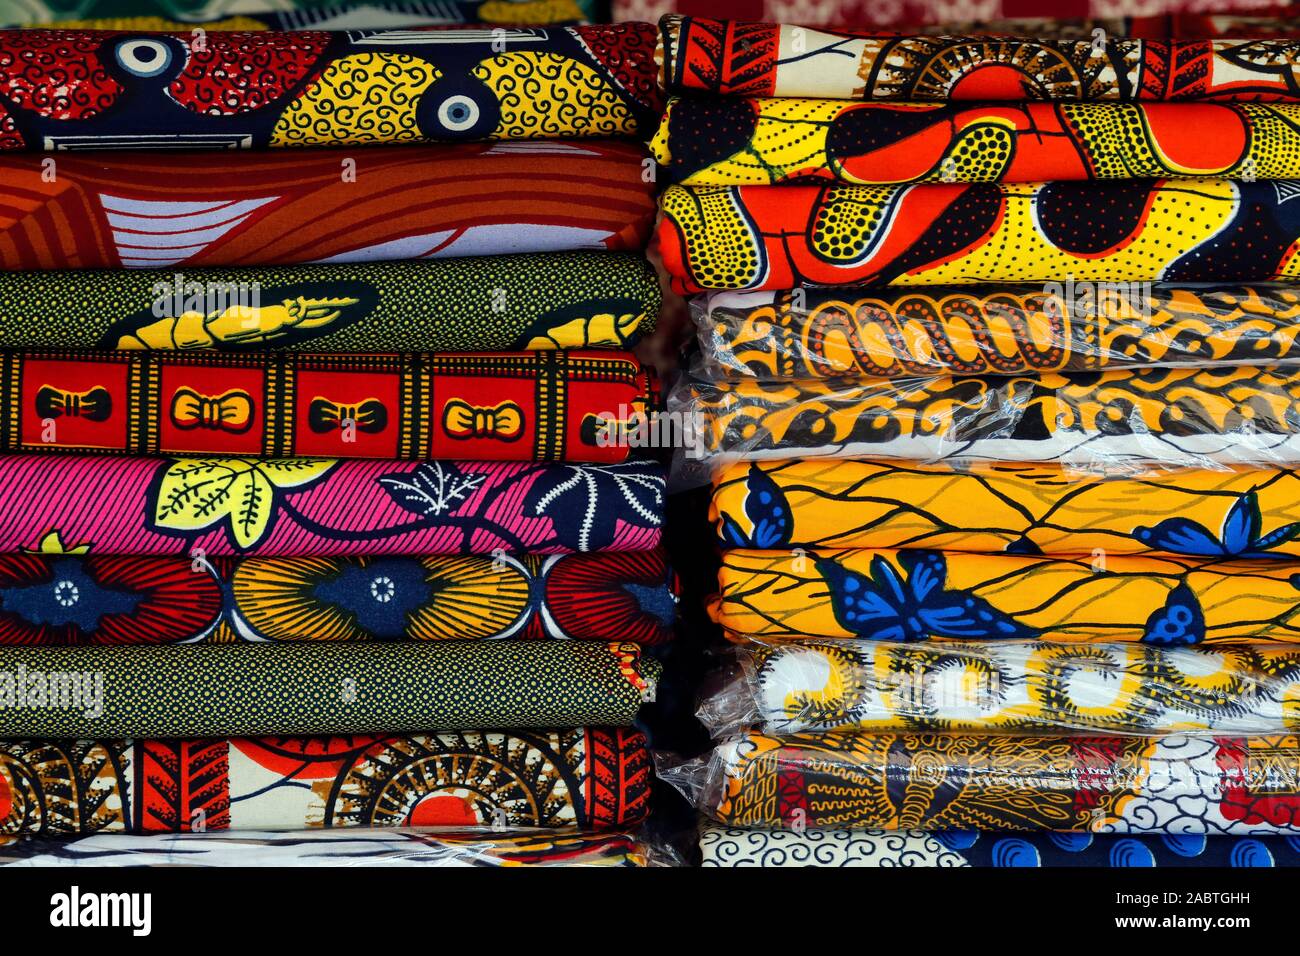 Importierte holländische Wachs drucken Gewebe für traditionelle afrikanische Kleidung. Lome. Togo. Stockfoto